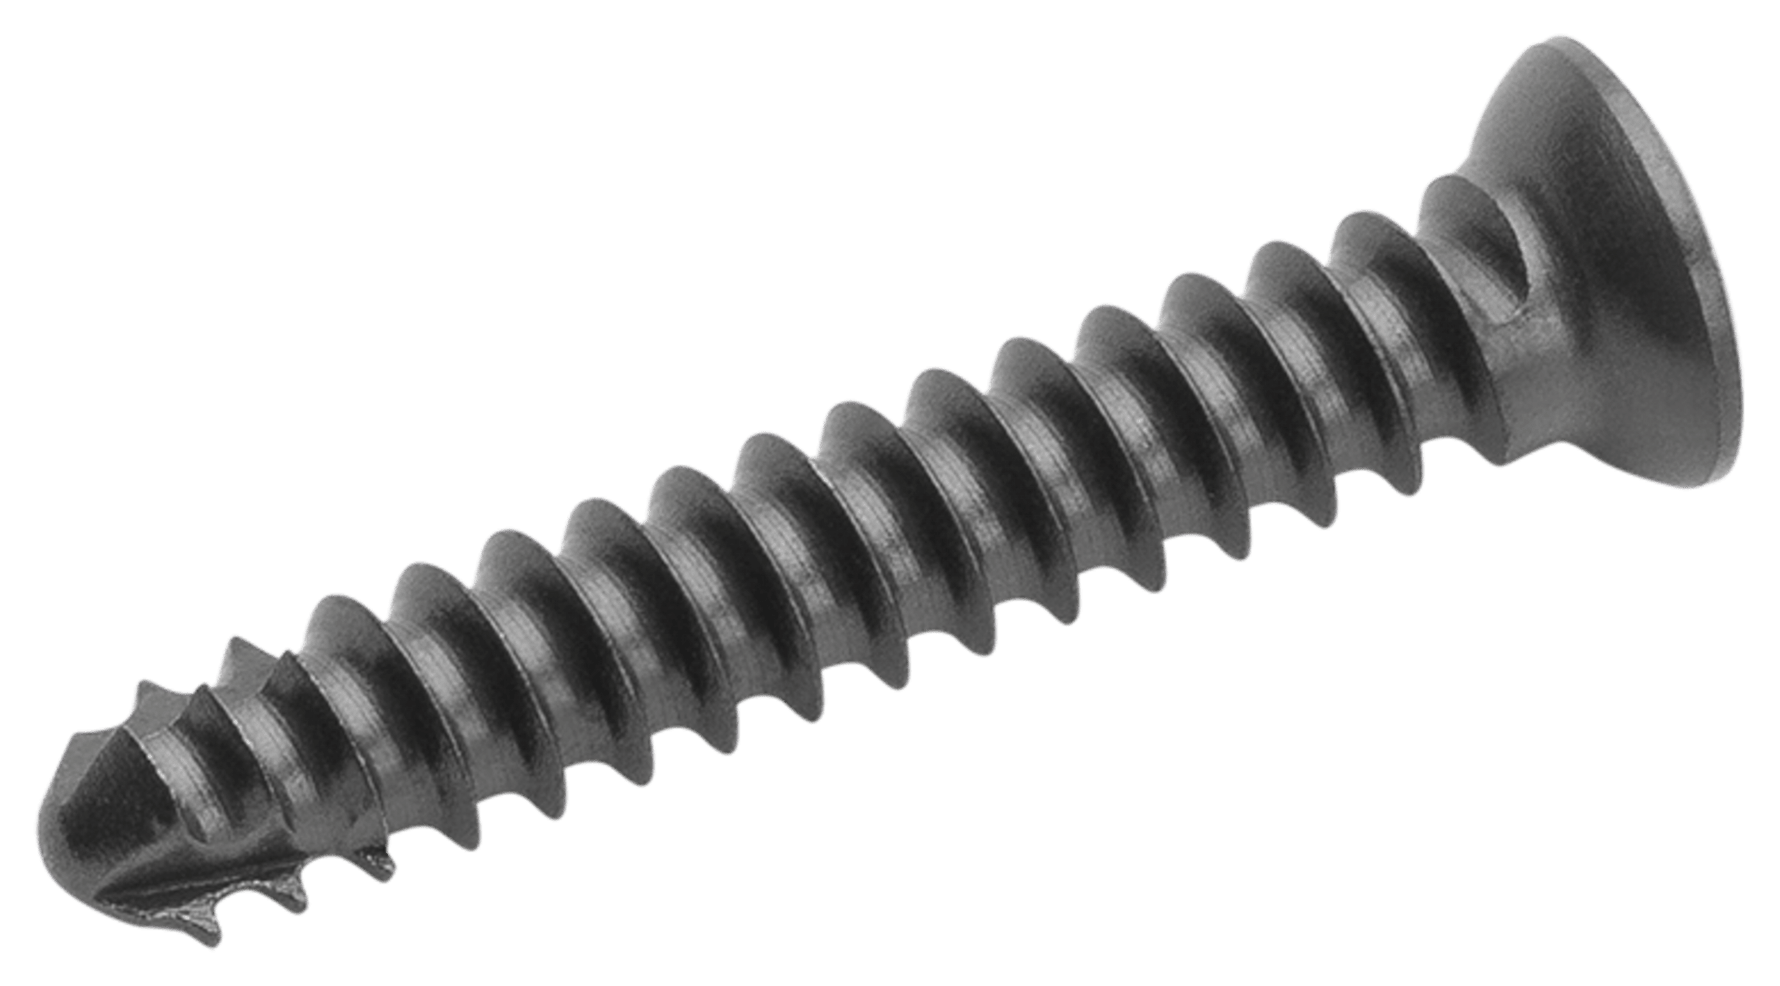 Cortical Screw, 2.0 mm x 8 mm